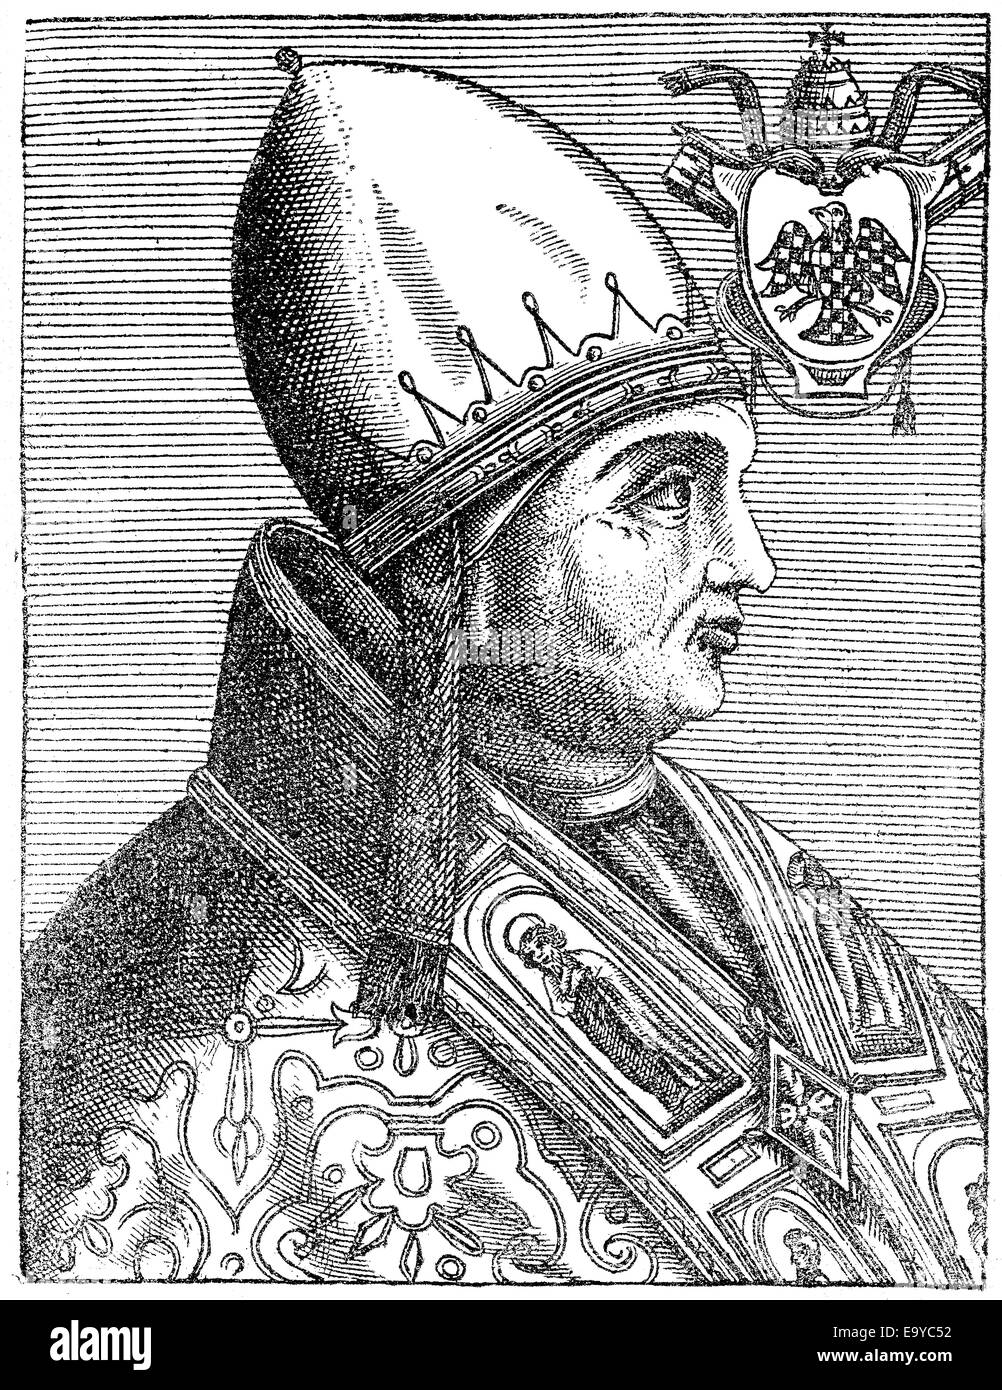 Pope Gregory IX or Gregorius IX; born Ugolino di Conti, Pope from 1227 to 1241, Papst Gregor IX., geboren als Ugolino dei Conti Stock Photo